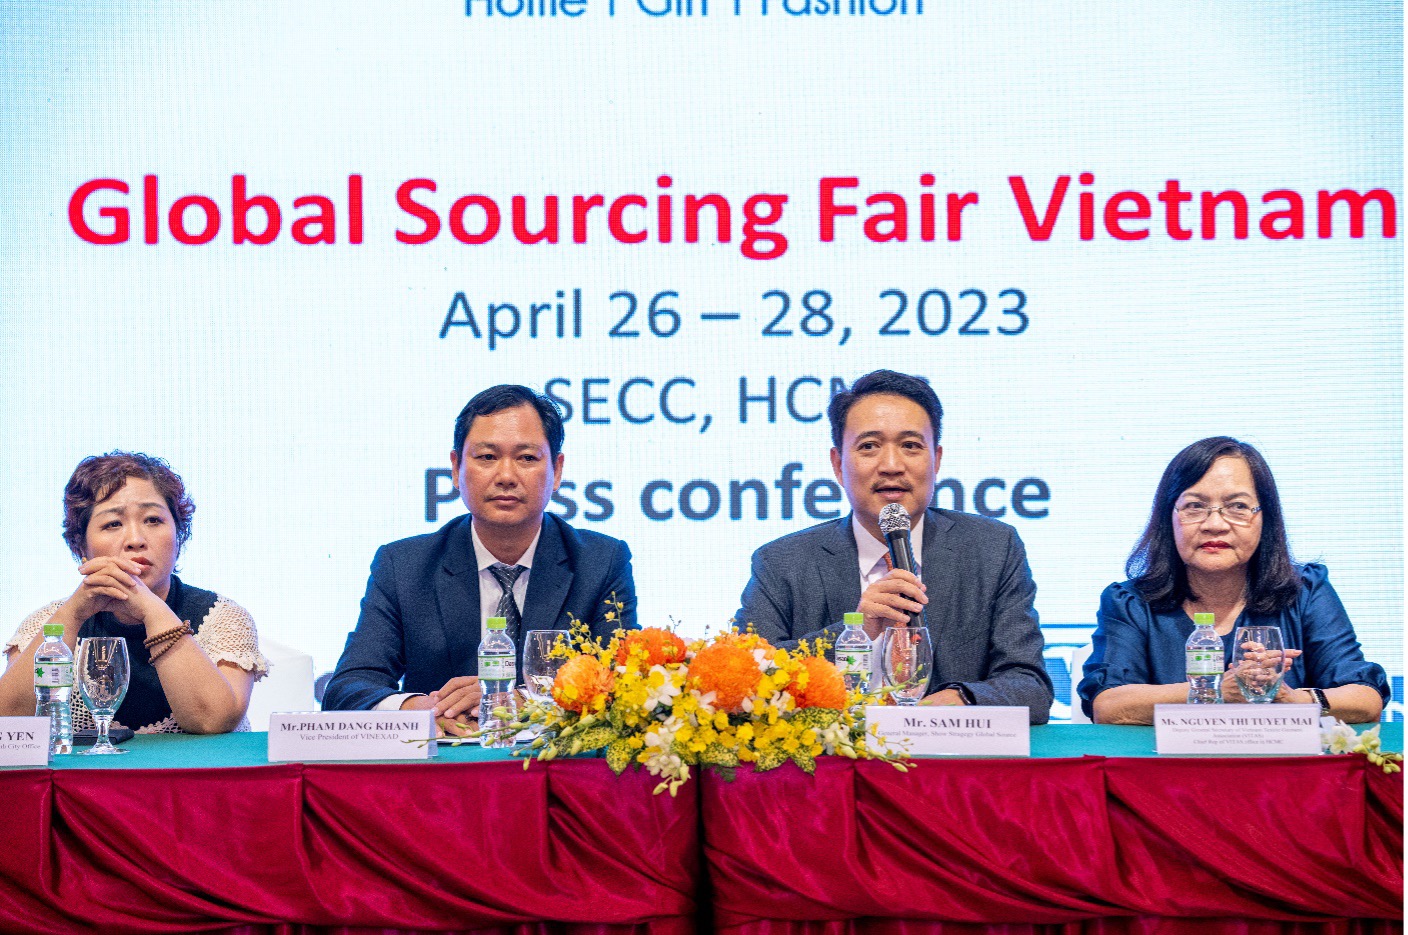 Cơ hội vàng gặp gỡ 6.000 nhà mua hàng quốc tế tại Global Sourcing Fair Việt Nam